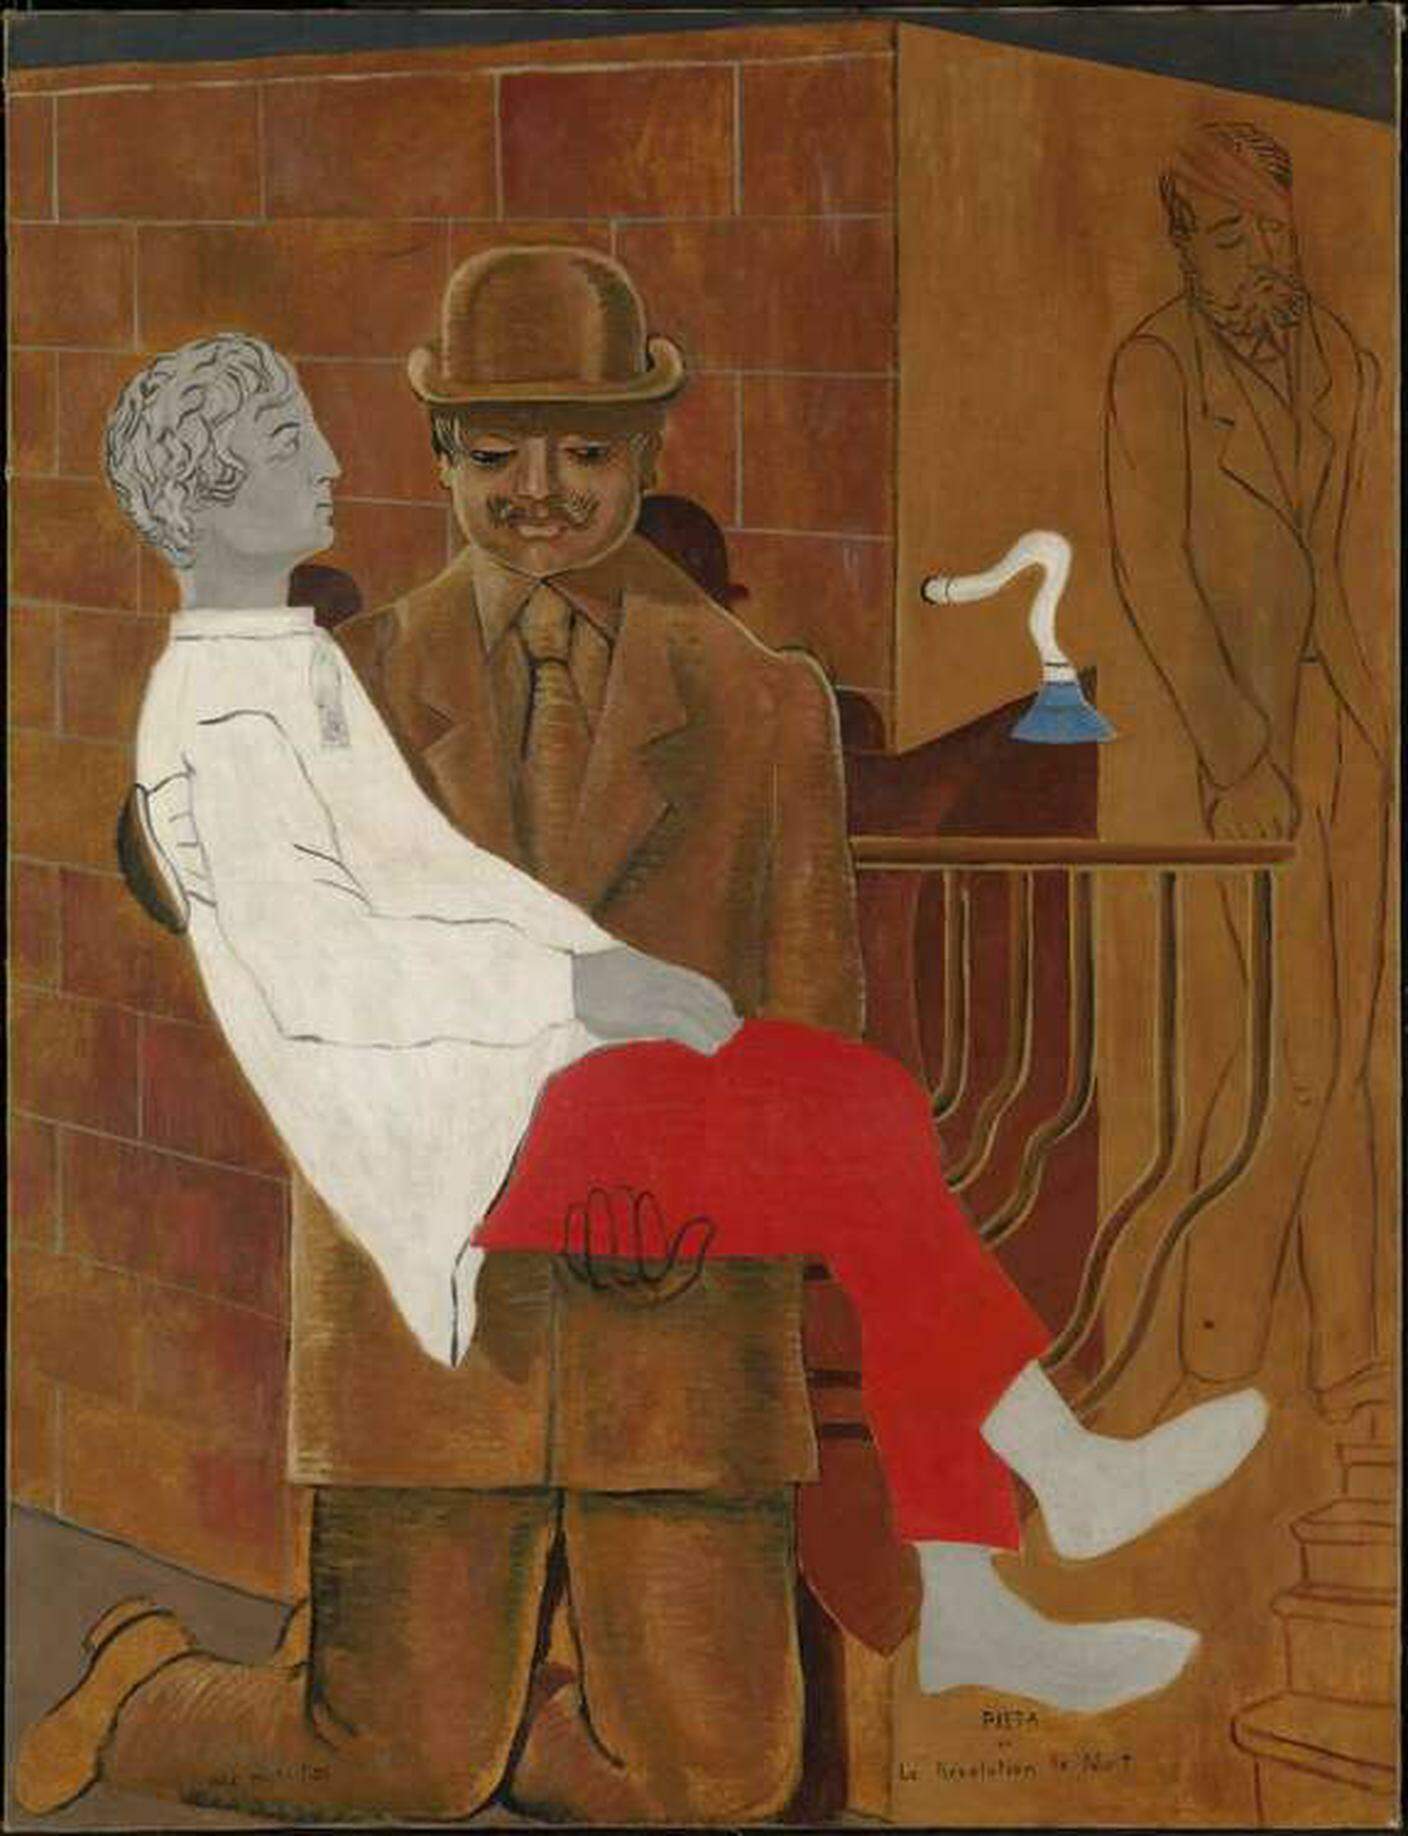 Max Ernst, Pietà o La rivoluzione la notte, 1923